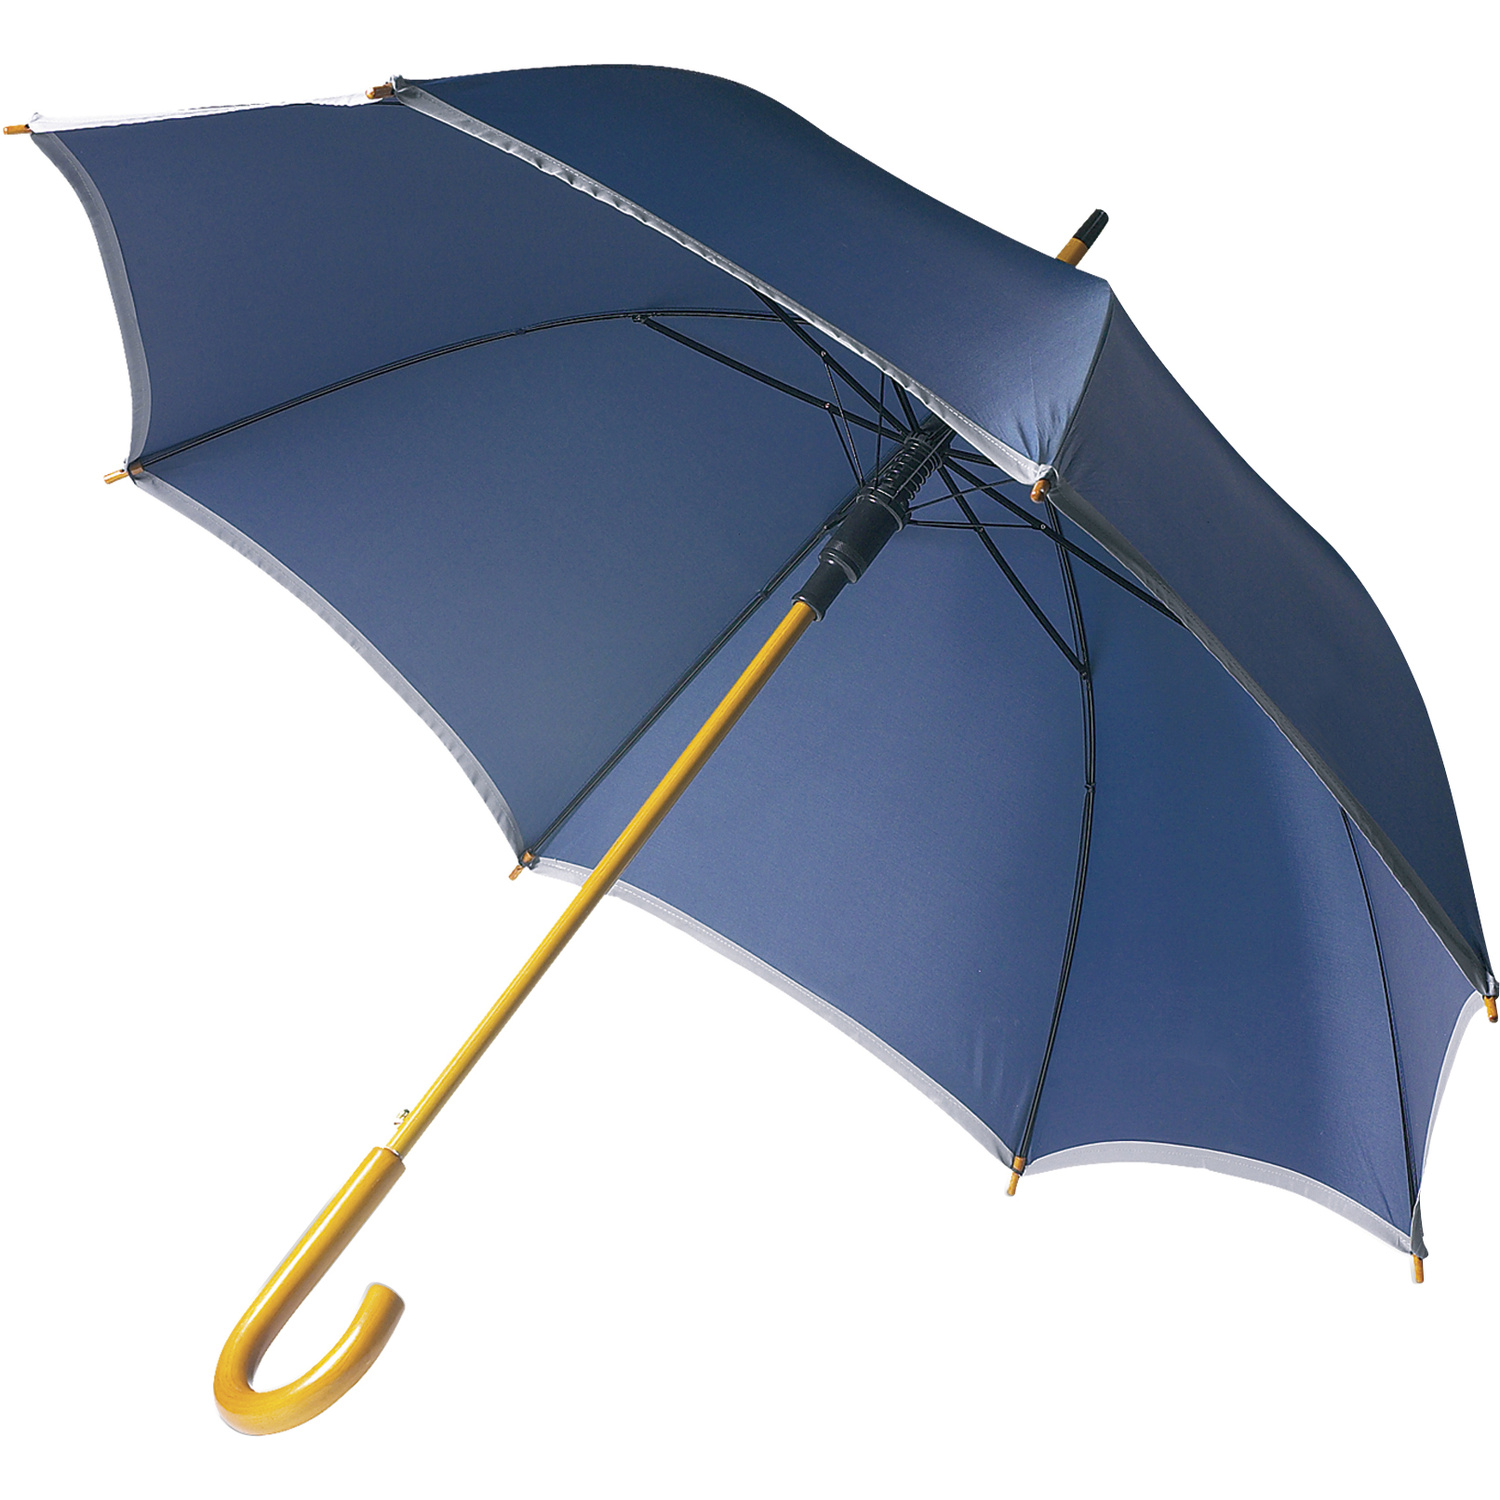 004068 005999999 3d045 ins pro01 fal - Golf umbrella